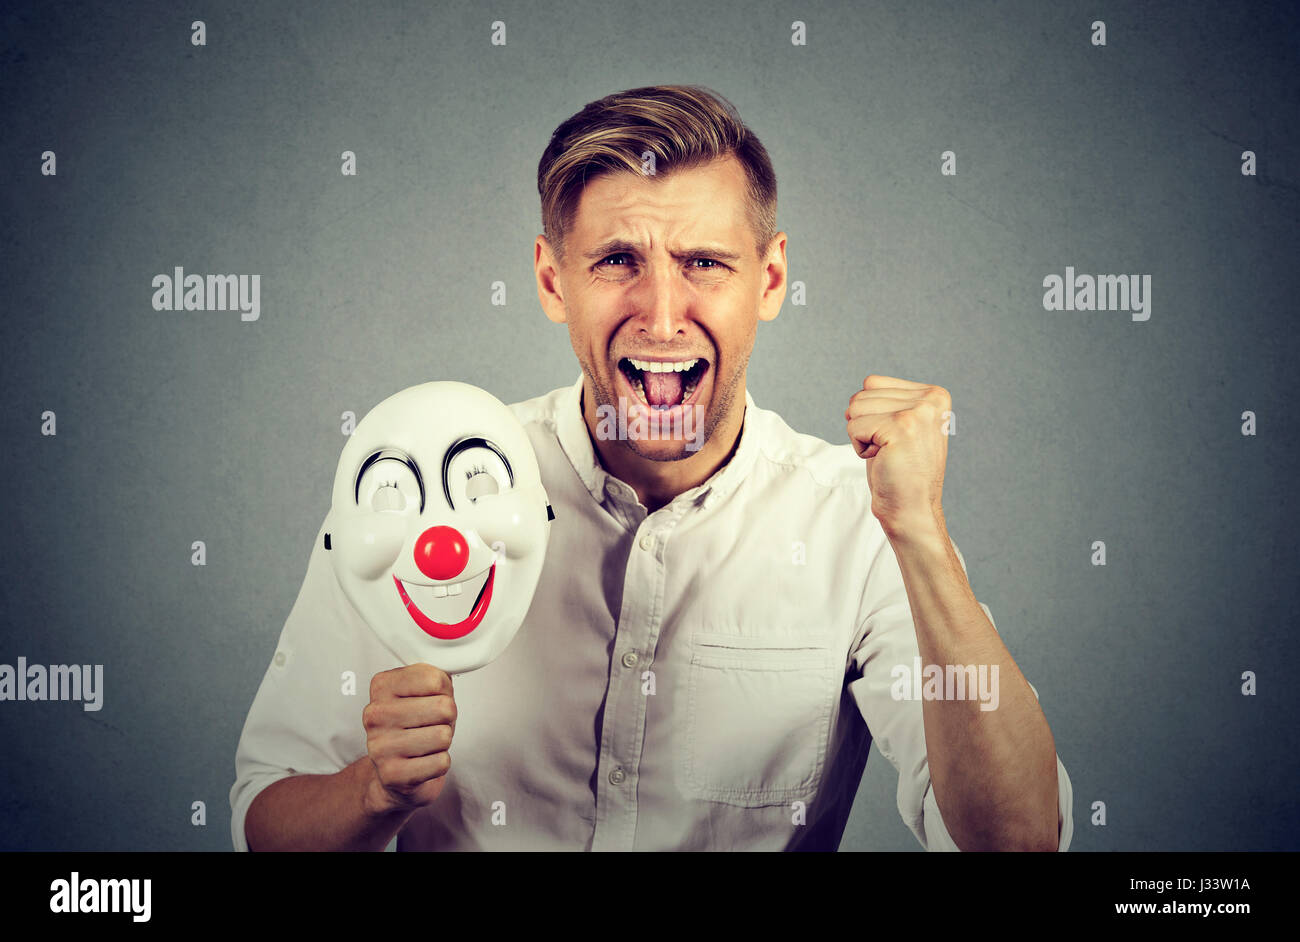 Porträt-junge verärgert böse schreienden Mann hält eine Clownsmaske mit dem Ausdruck ihrer Fröhlichkeit Glück auf graue Wand Hintergrund isoliert. Menschliche Emotionen ja Stockfoto